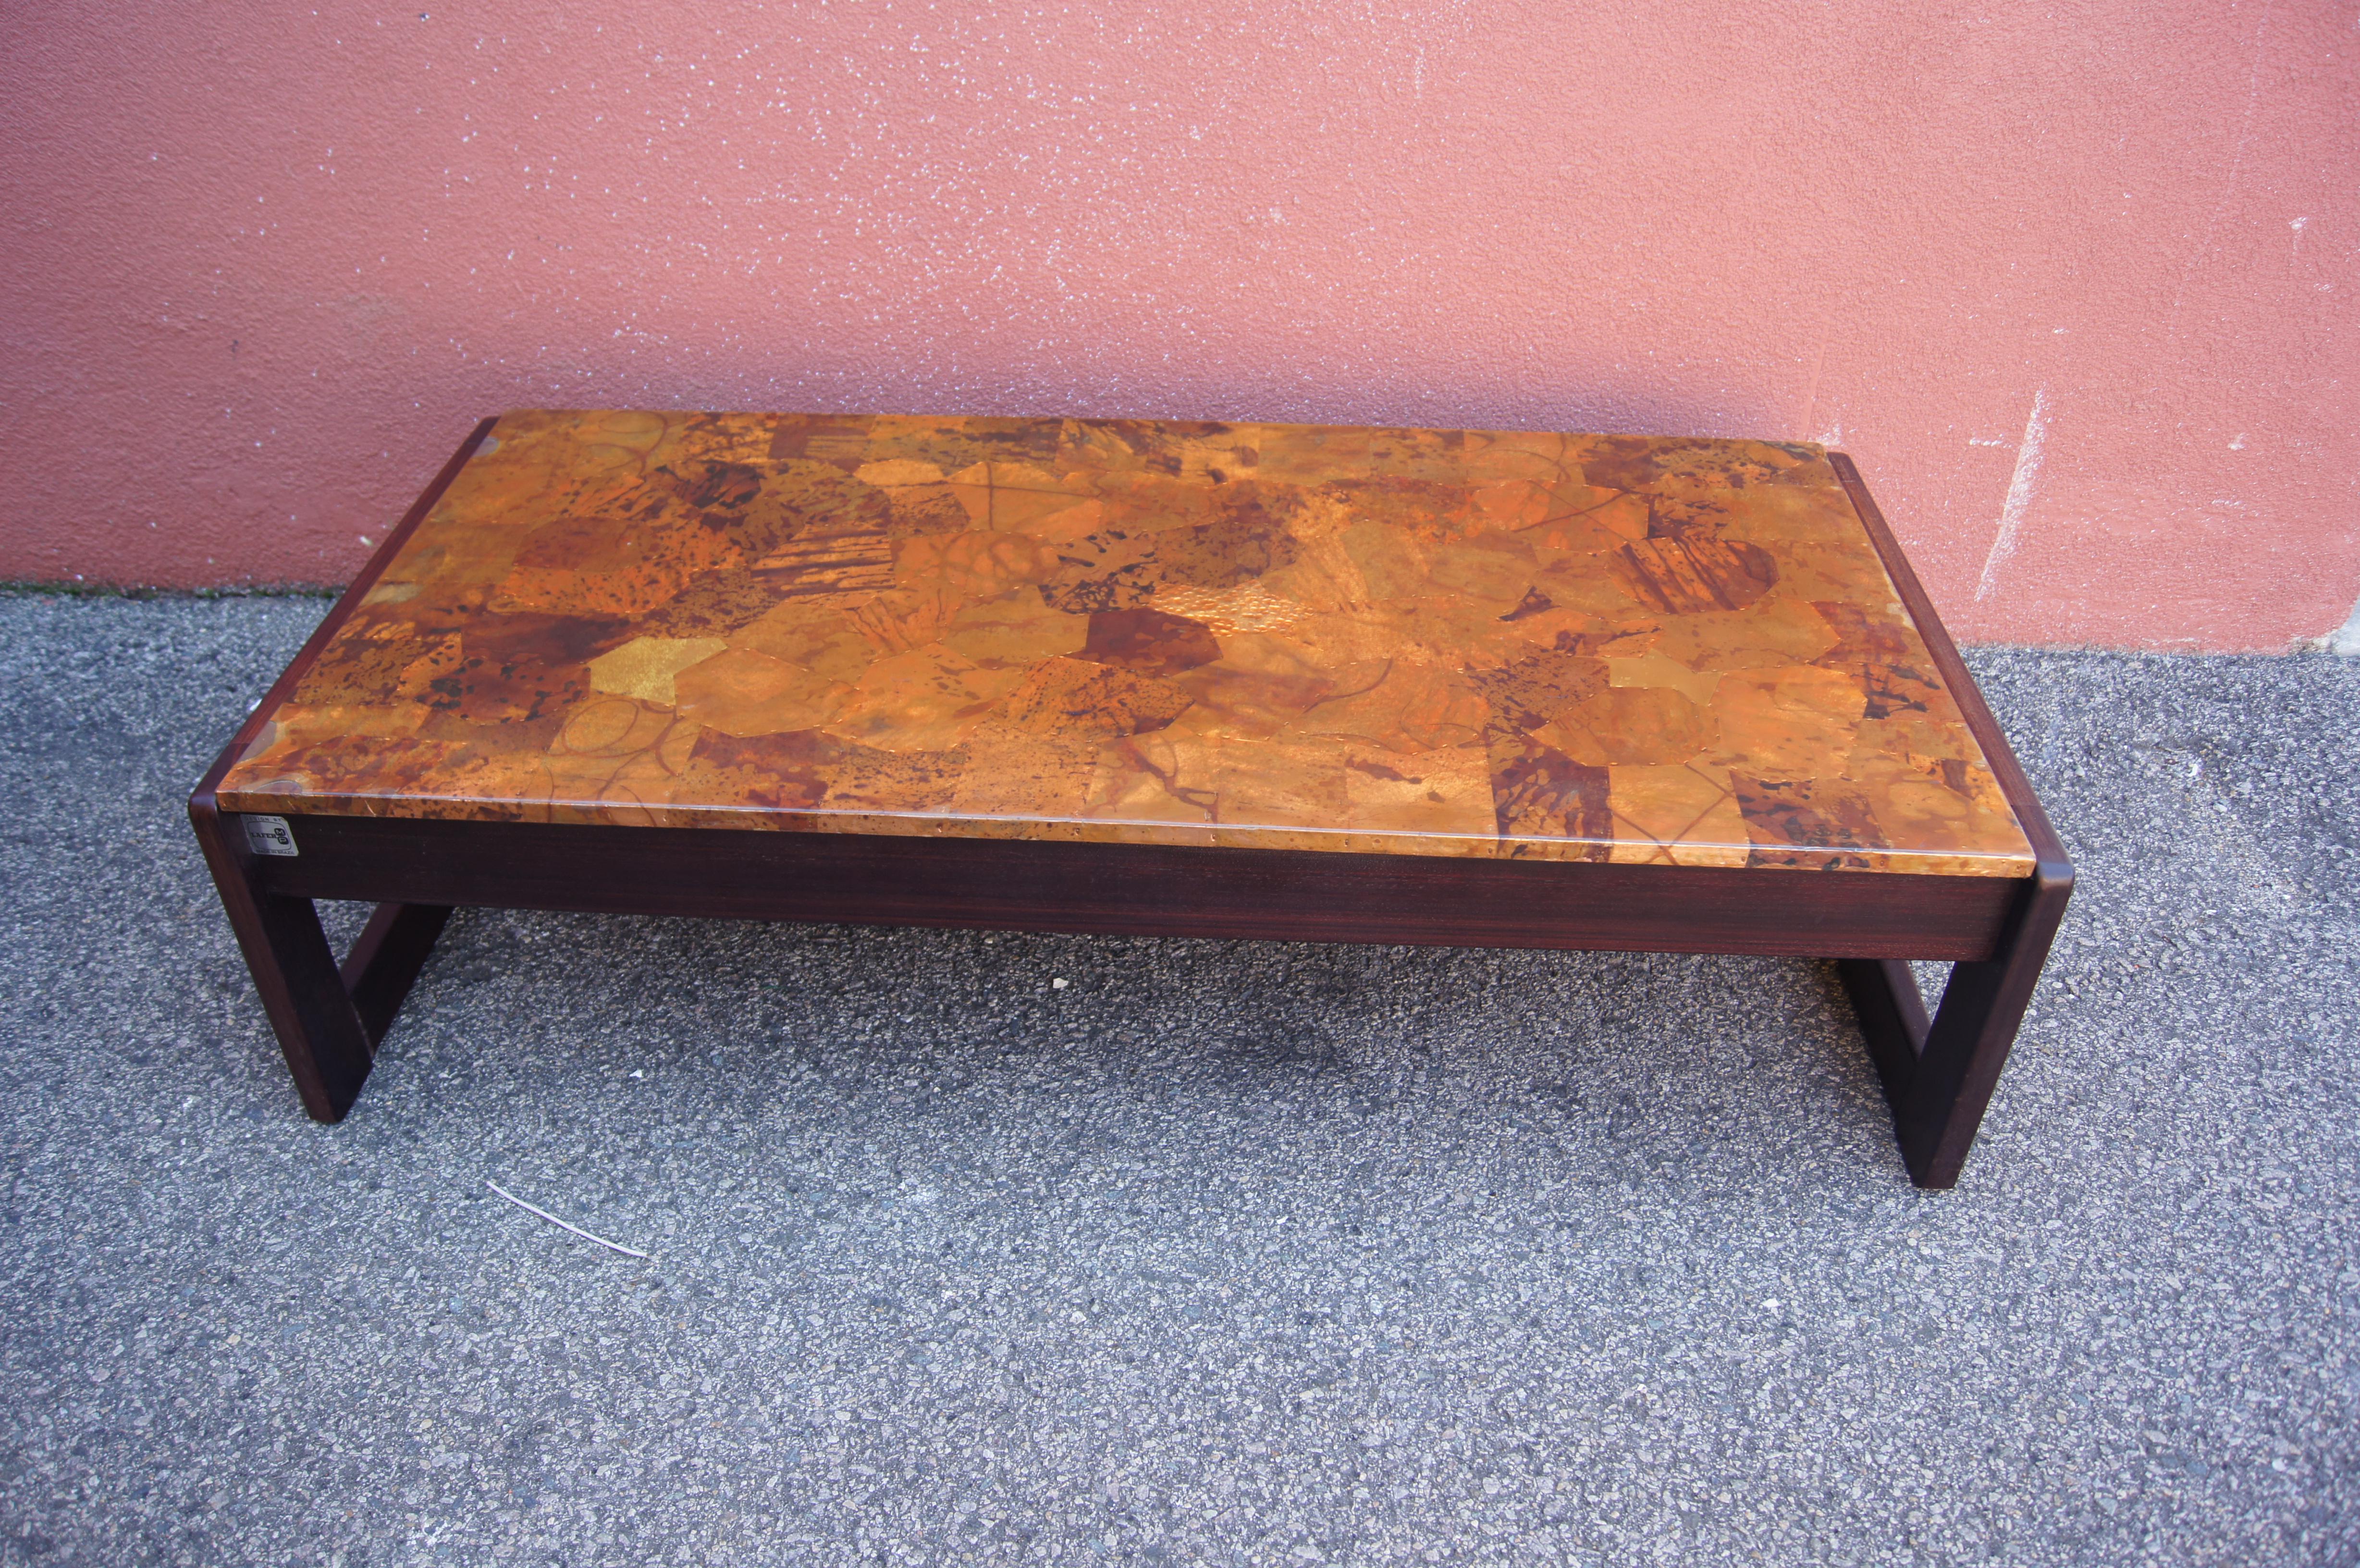 Conçue par le moderniste brésilien Percival Lafer, cette table basse en palissandre jacaranda présente un cadre rectangulaire audacieux avec des ferrures apparentes. La partie supérieure est fabriquée en cuivre patchwork magnifiquement patiné.